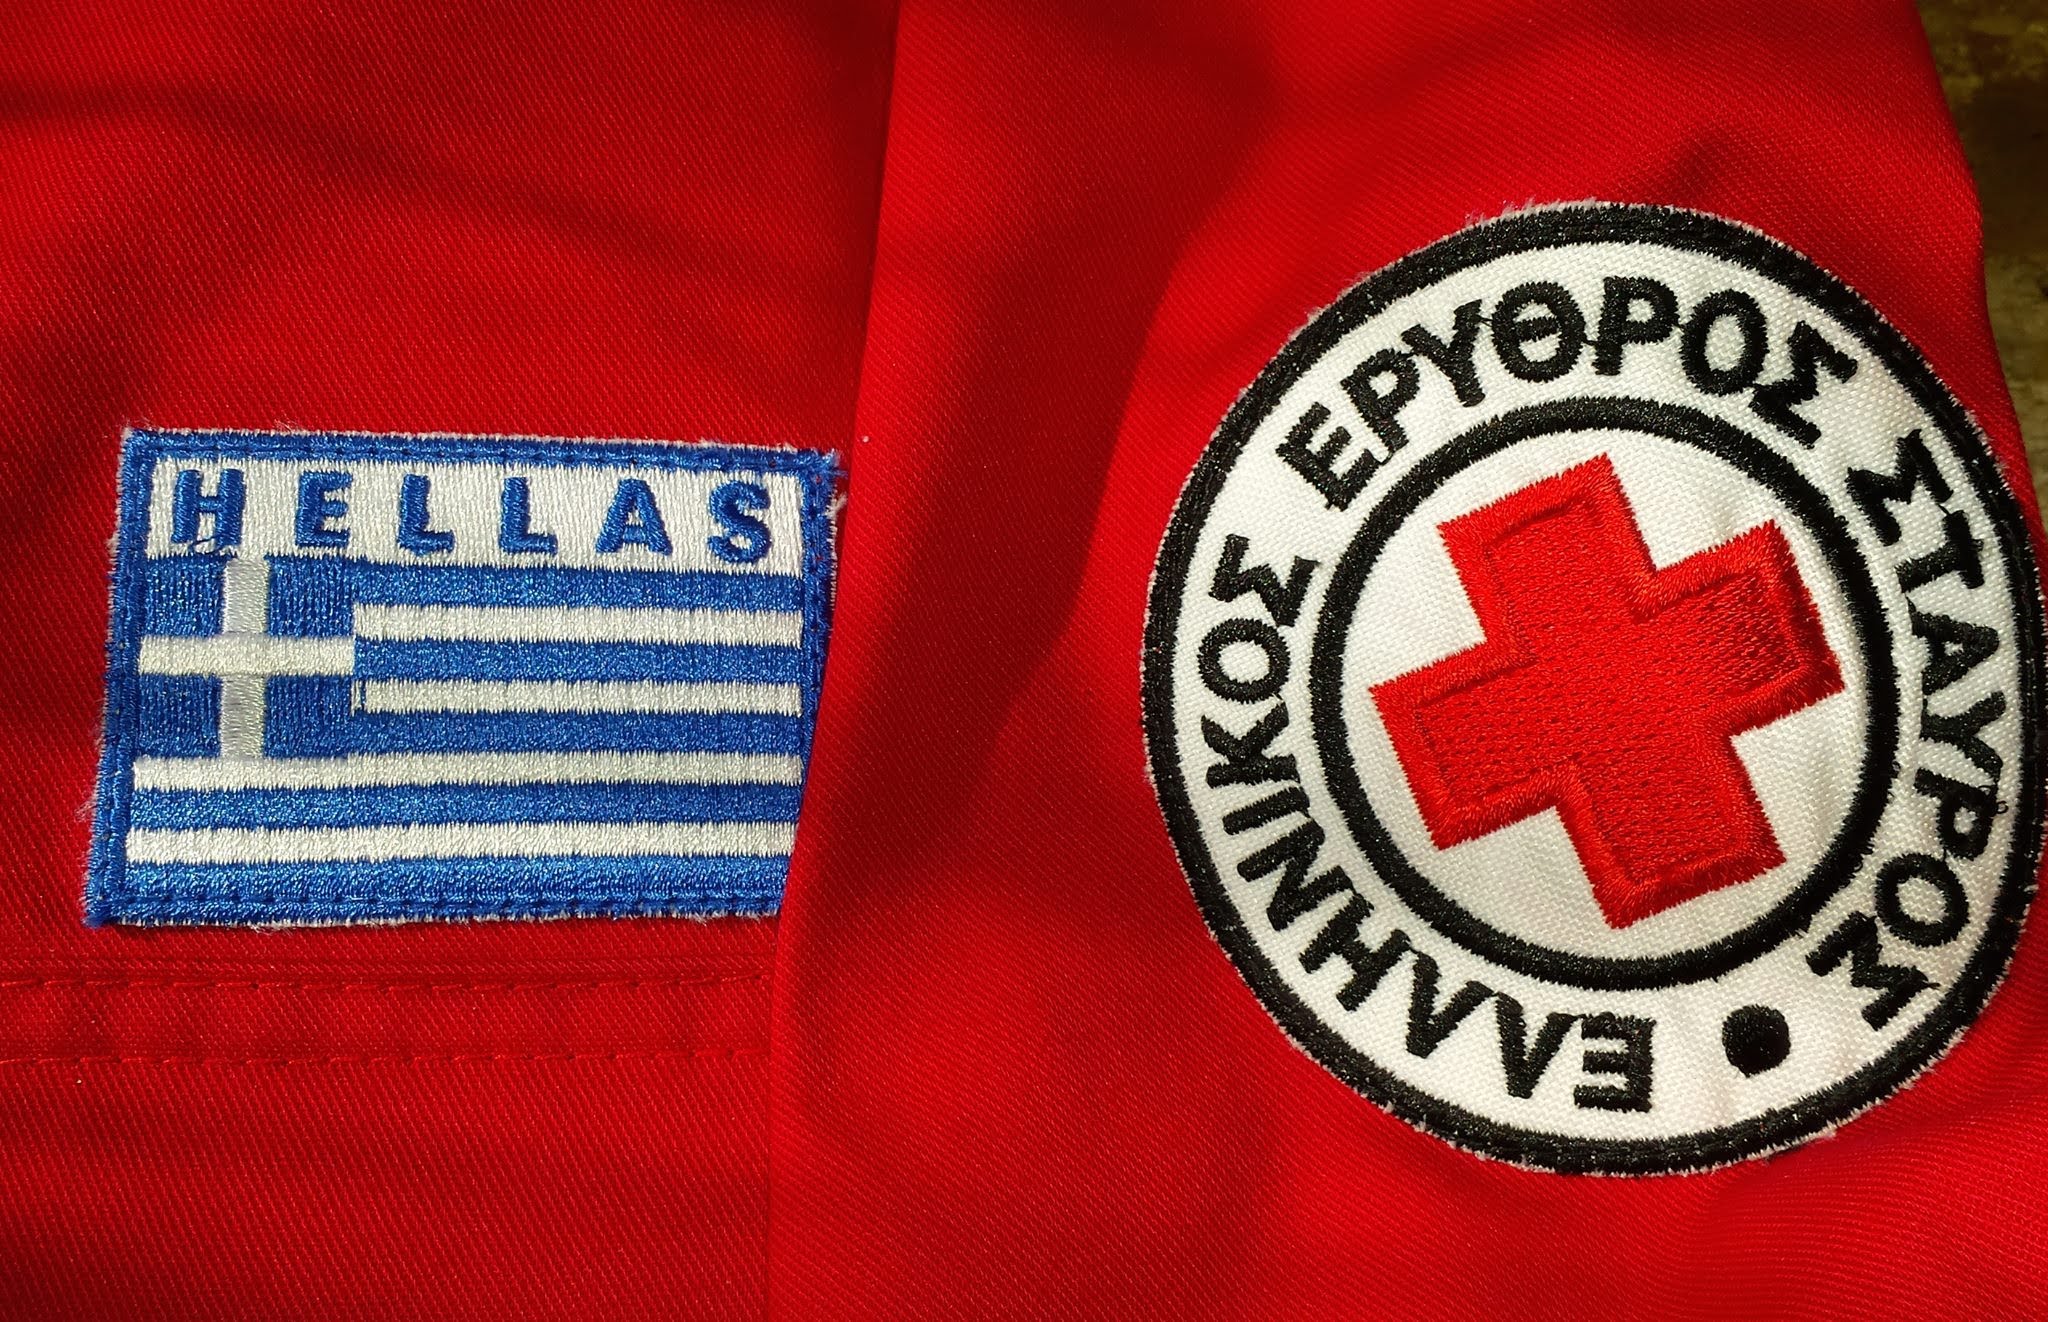 Πρόβλημα για τον Ελληνικό Ερυθρό Σταυρό – Κινδυνεύει με αποβολή από τους κόλπους του Διεθνούς Ερυθρού Σταυρού